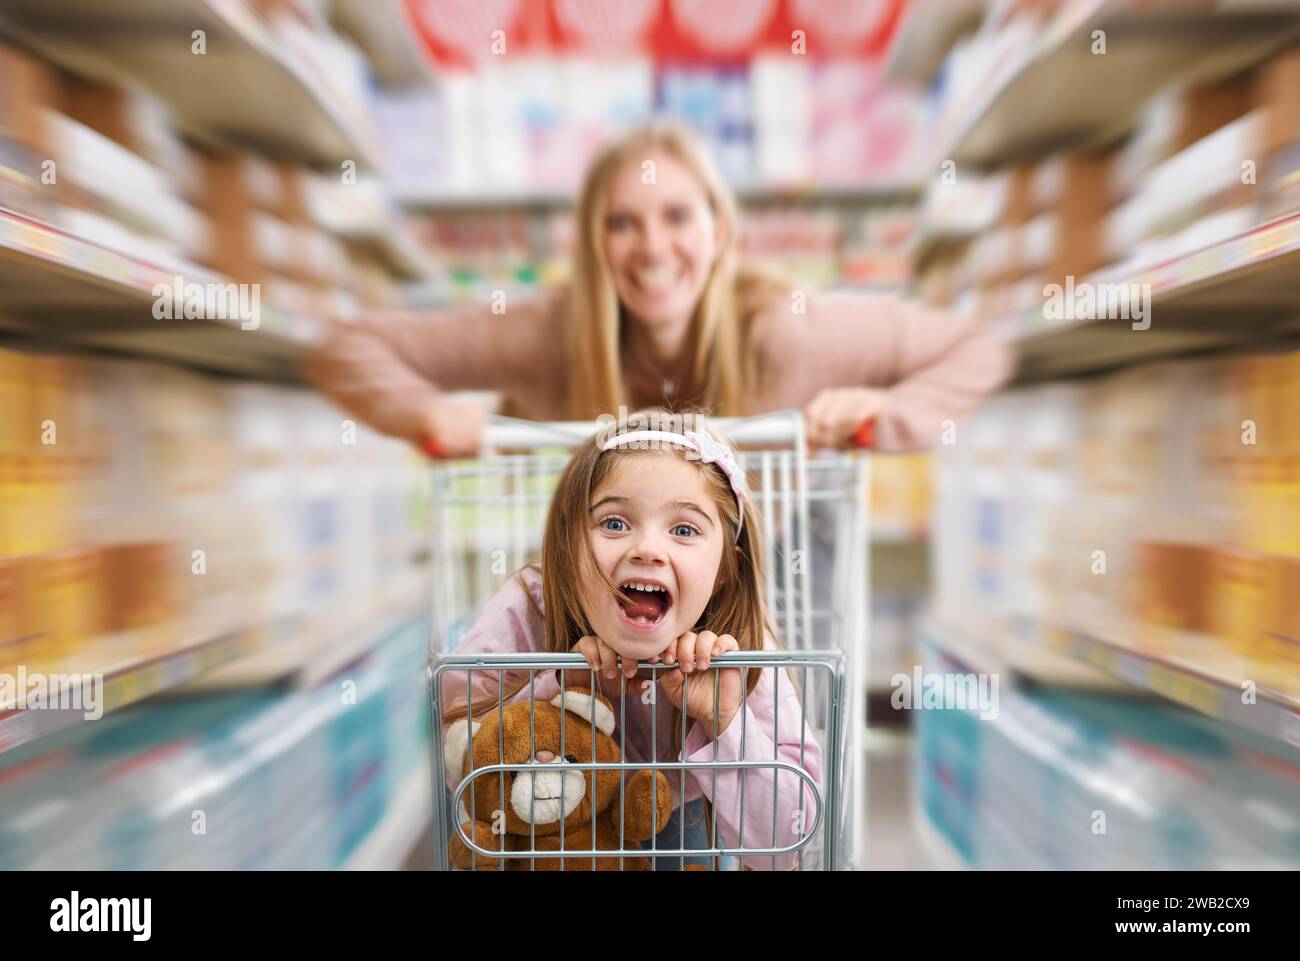 Fröhliches, süßes Mädchen, das im Supermarkt in einem Einkaufswagen sitzt, ihre Mutter schiebt sie: Lebensmittelgeschäft und Lifestyle-Konzept Stockfoto